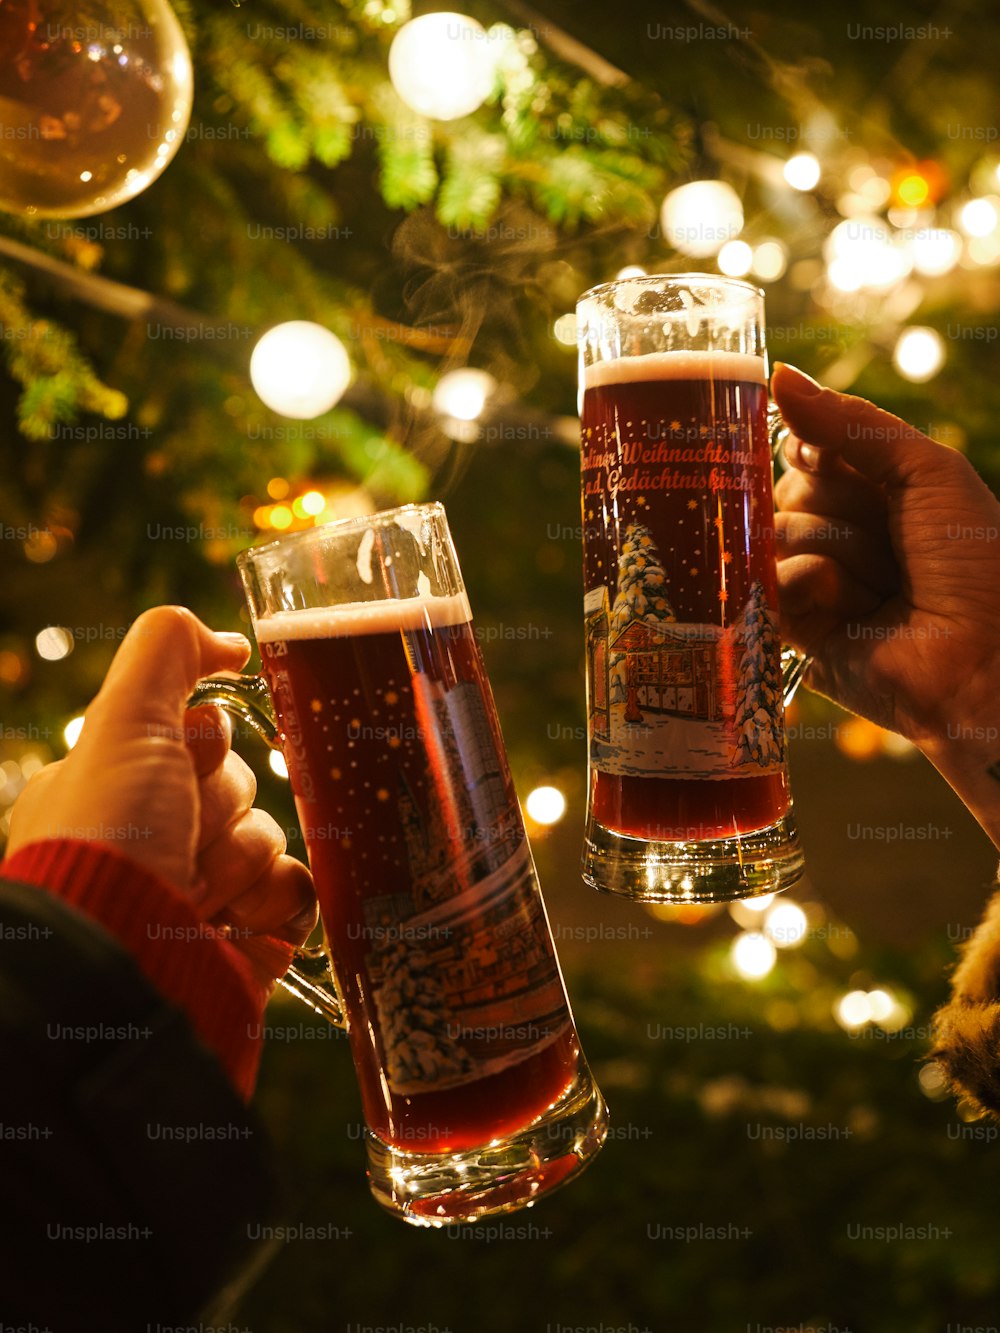 크리스마스 트리 앞에서 맥주를 마시며 건배하는 두 사람